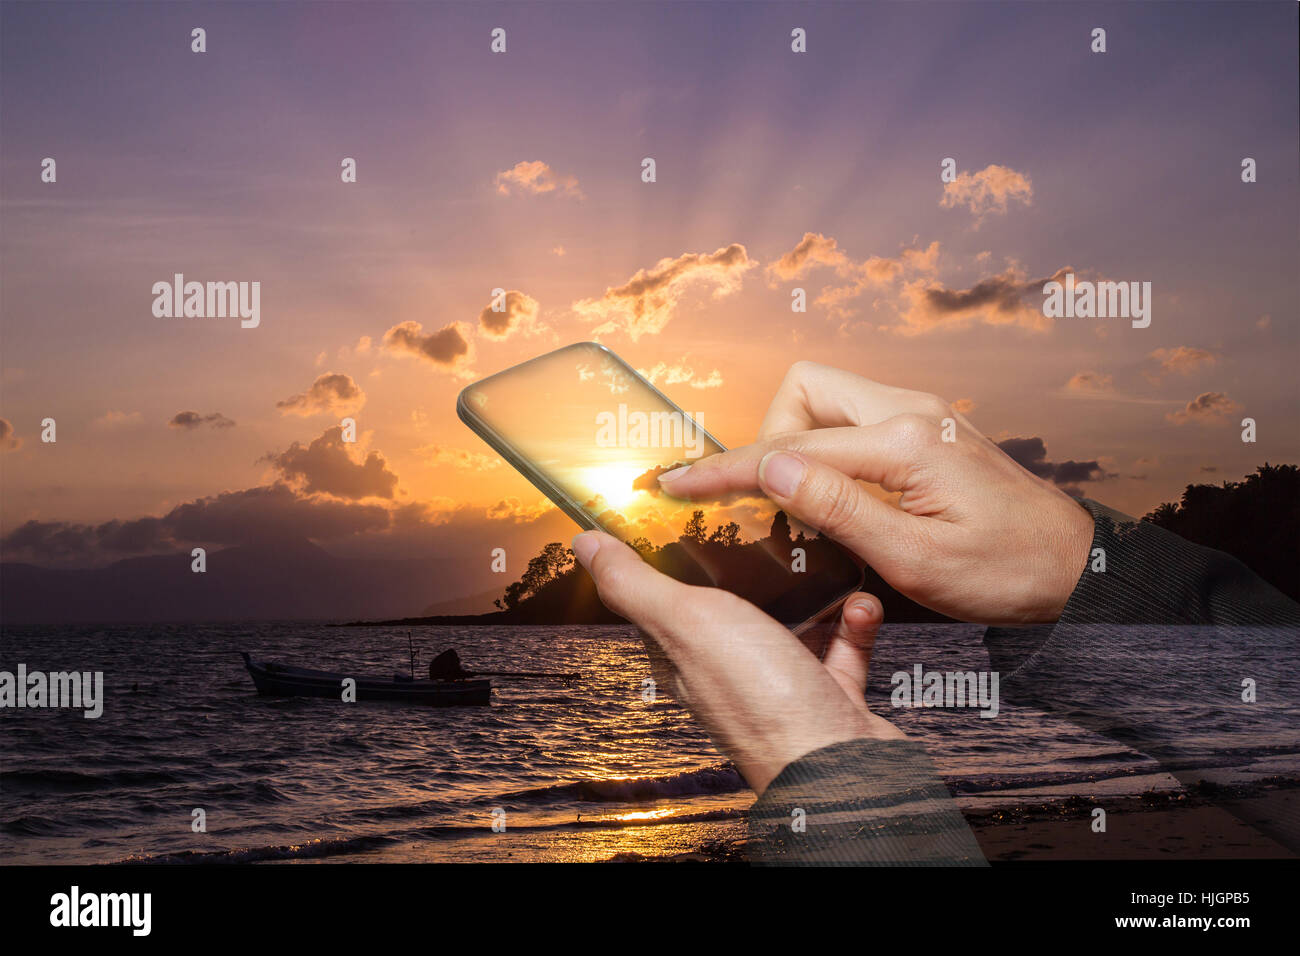 Doppia esposizione della donna mano touch screen smart phone su sunrise sulla spiaggia Foto Stock